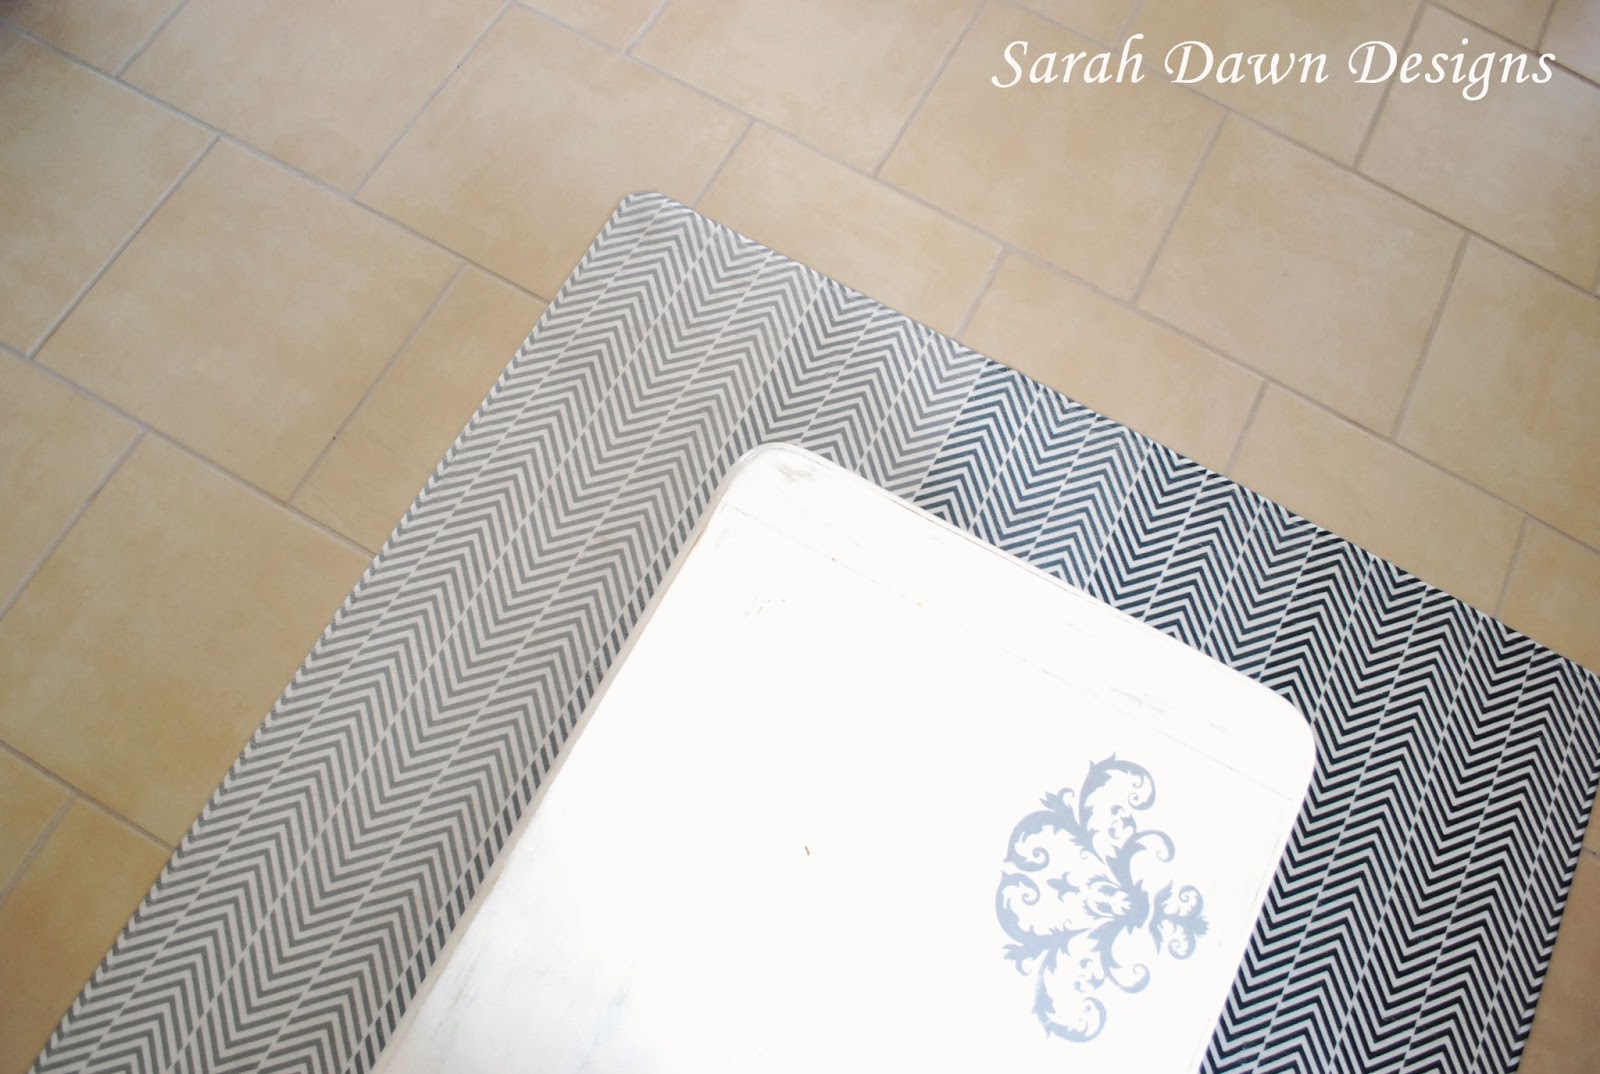 Sarah Dawn Designs Custom Rug Cafe, Cafepress Rug Reviews